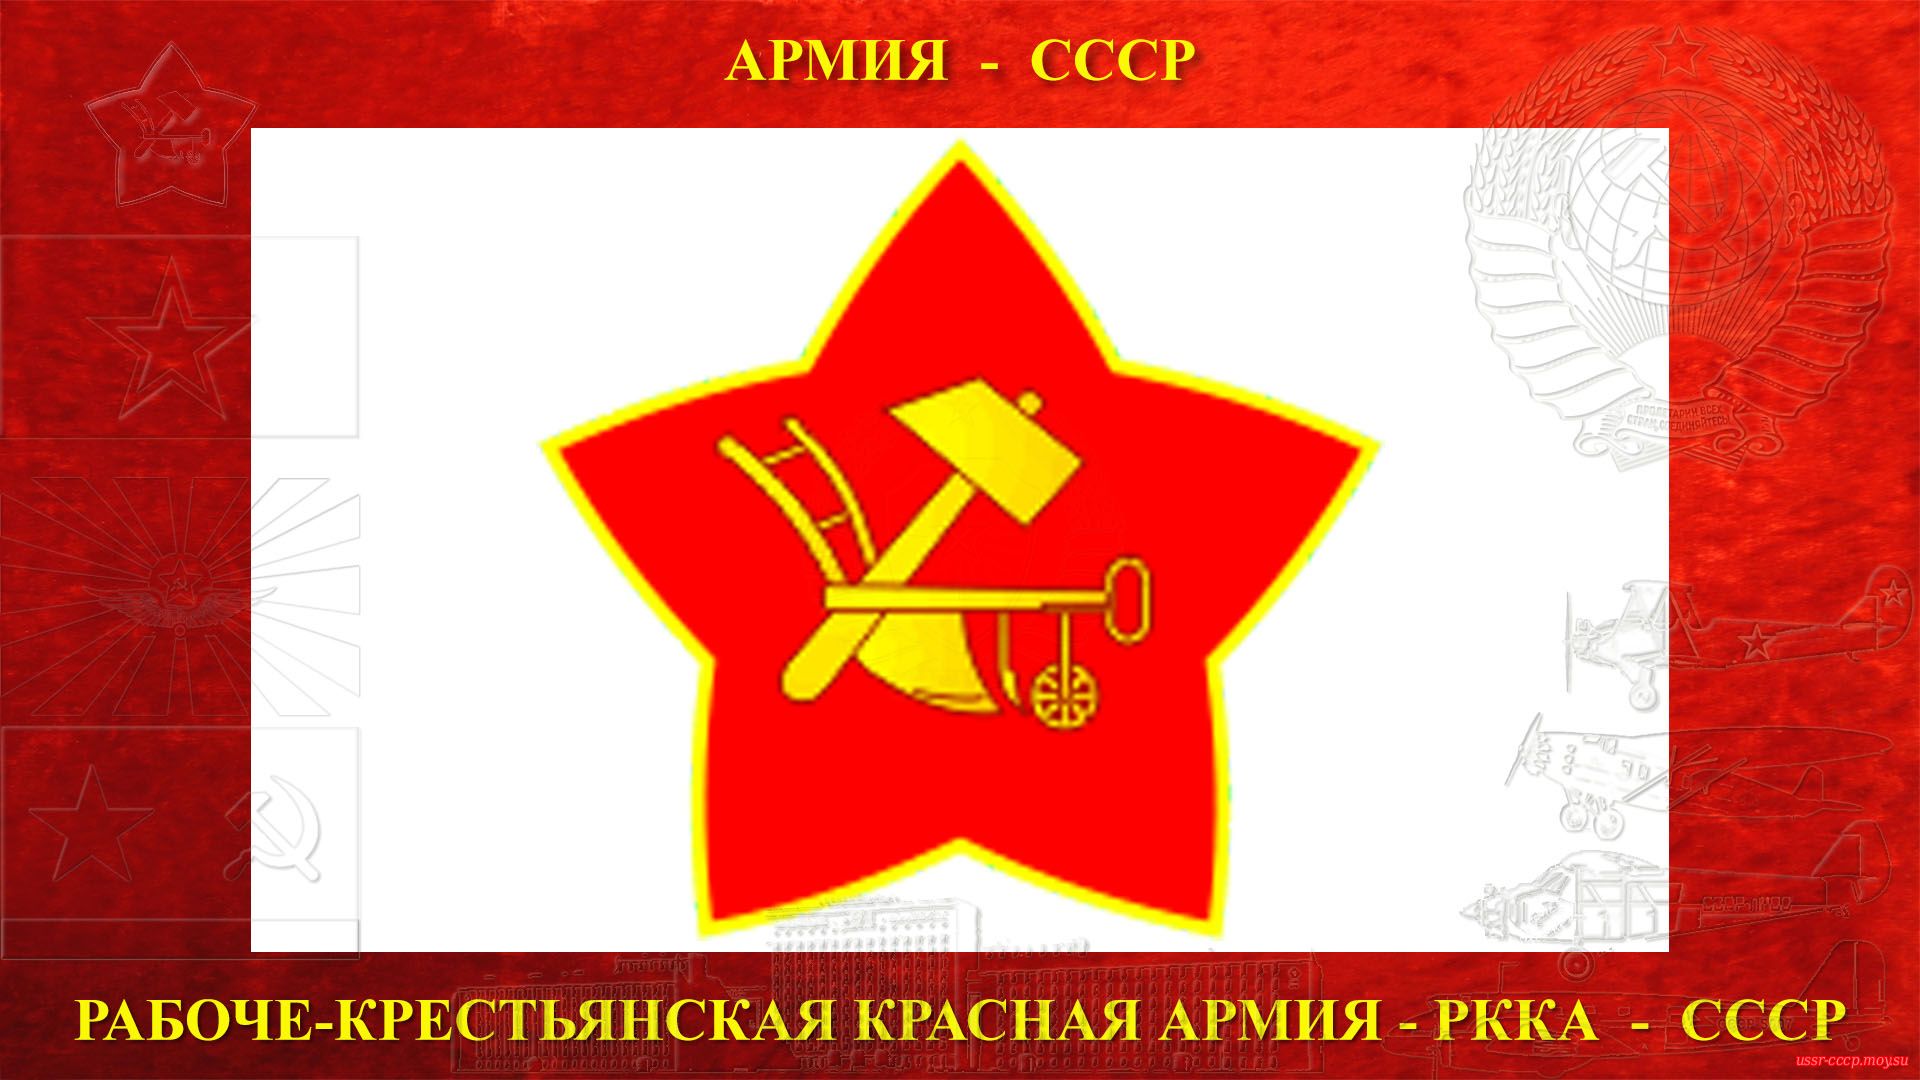 Эмблемы РККА, Плуг и молот внутри красной звезды, образца 1918 года.